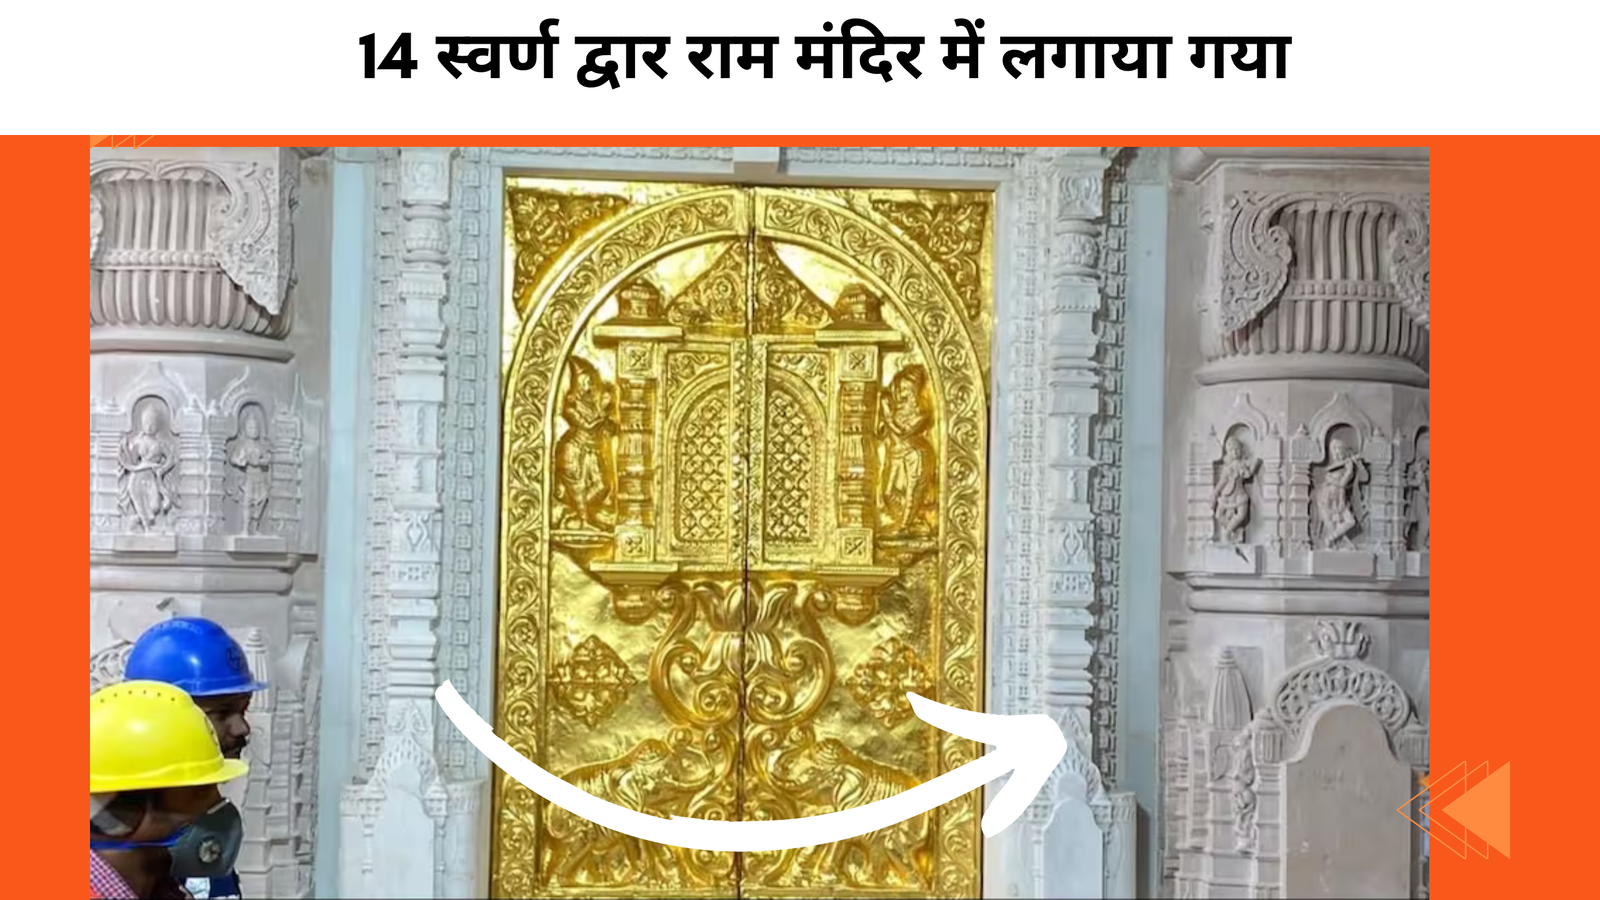 14 स्वर्ण द्वार राम मंदिर में लगाया गया